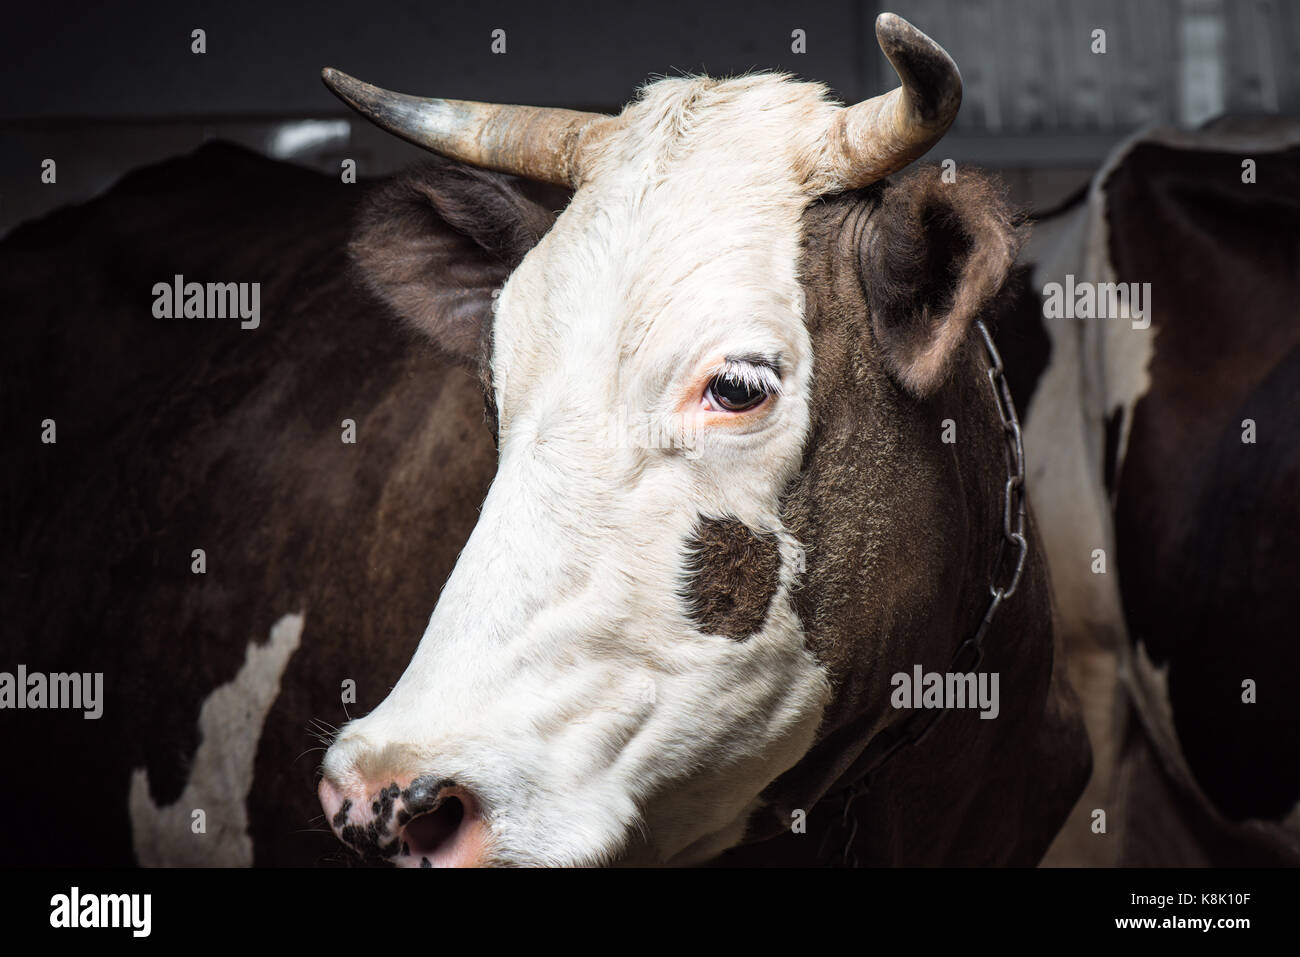 Cowhouse vista cercana de brown cow en parada Foto de stock